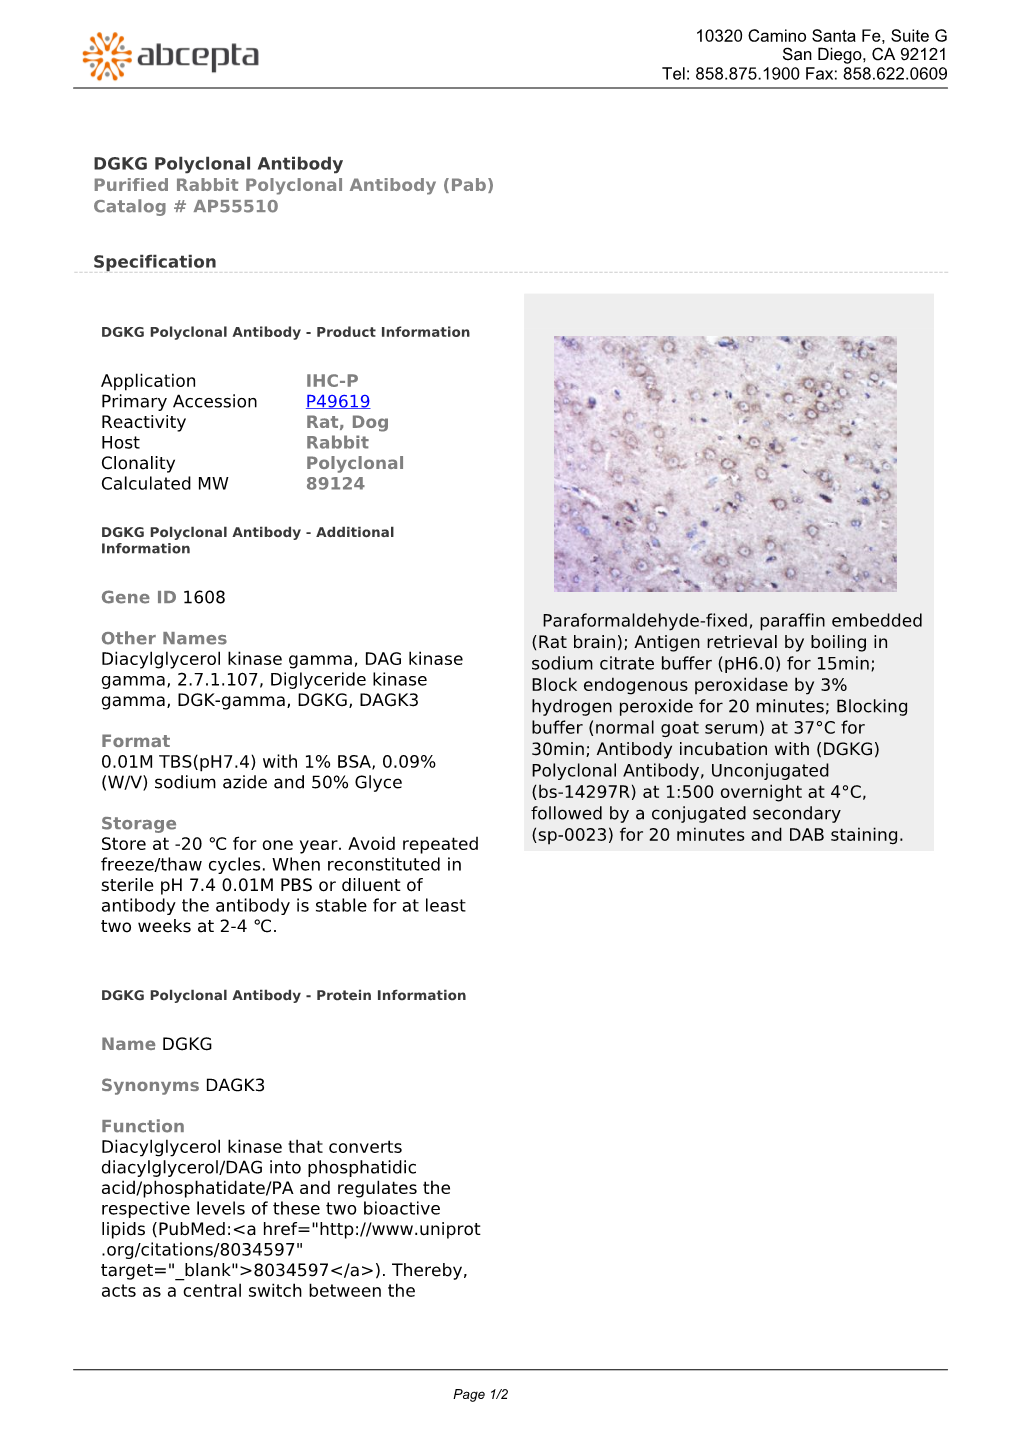 DGKG Polyclonal Antibody Purified Rabbit Polyclonal Antibody (Pab) Catalog # AP55510